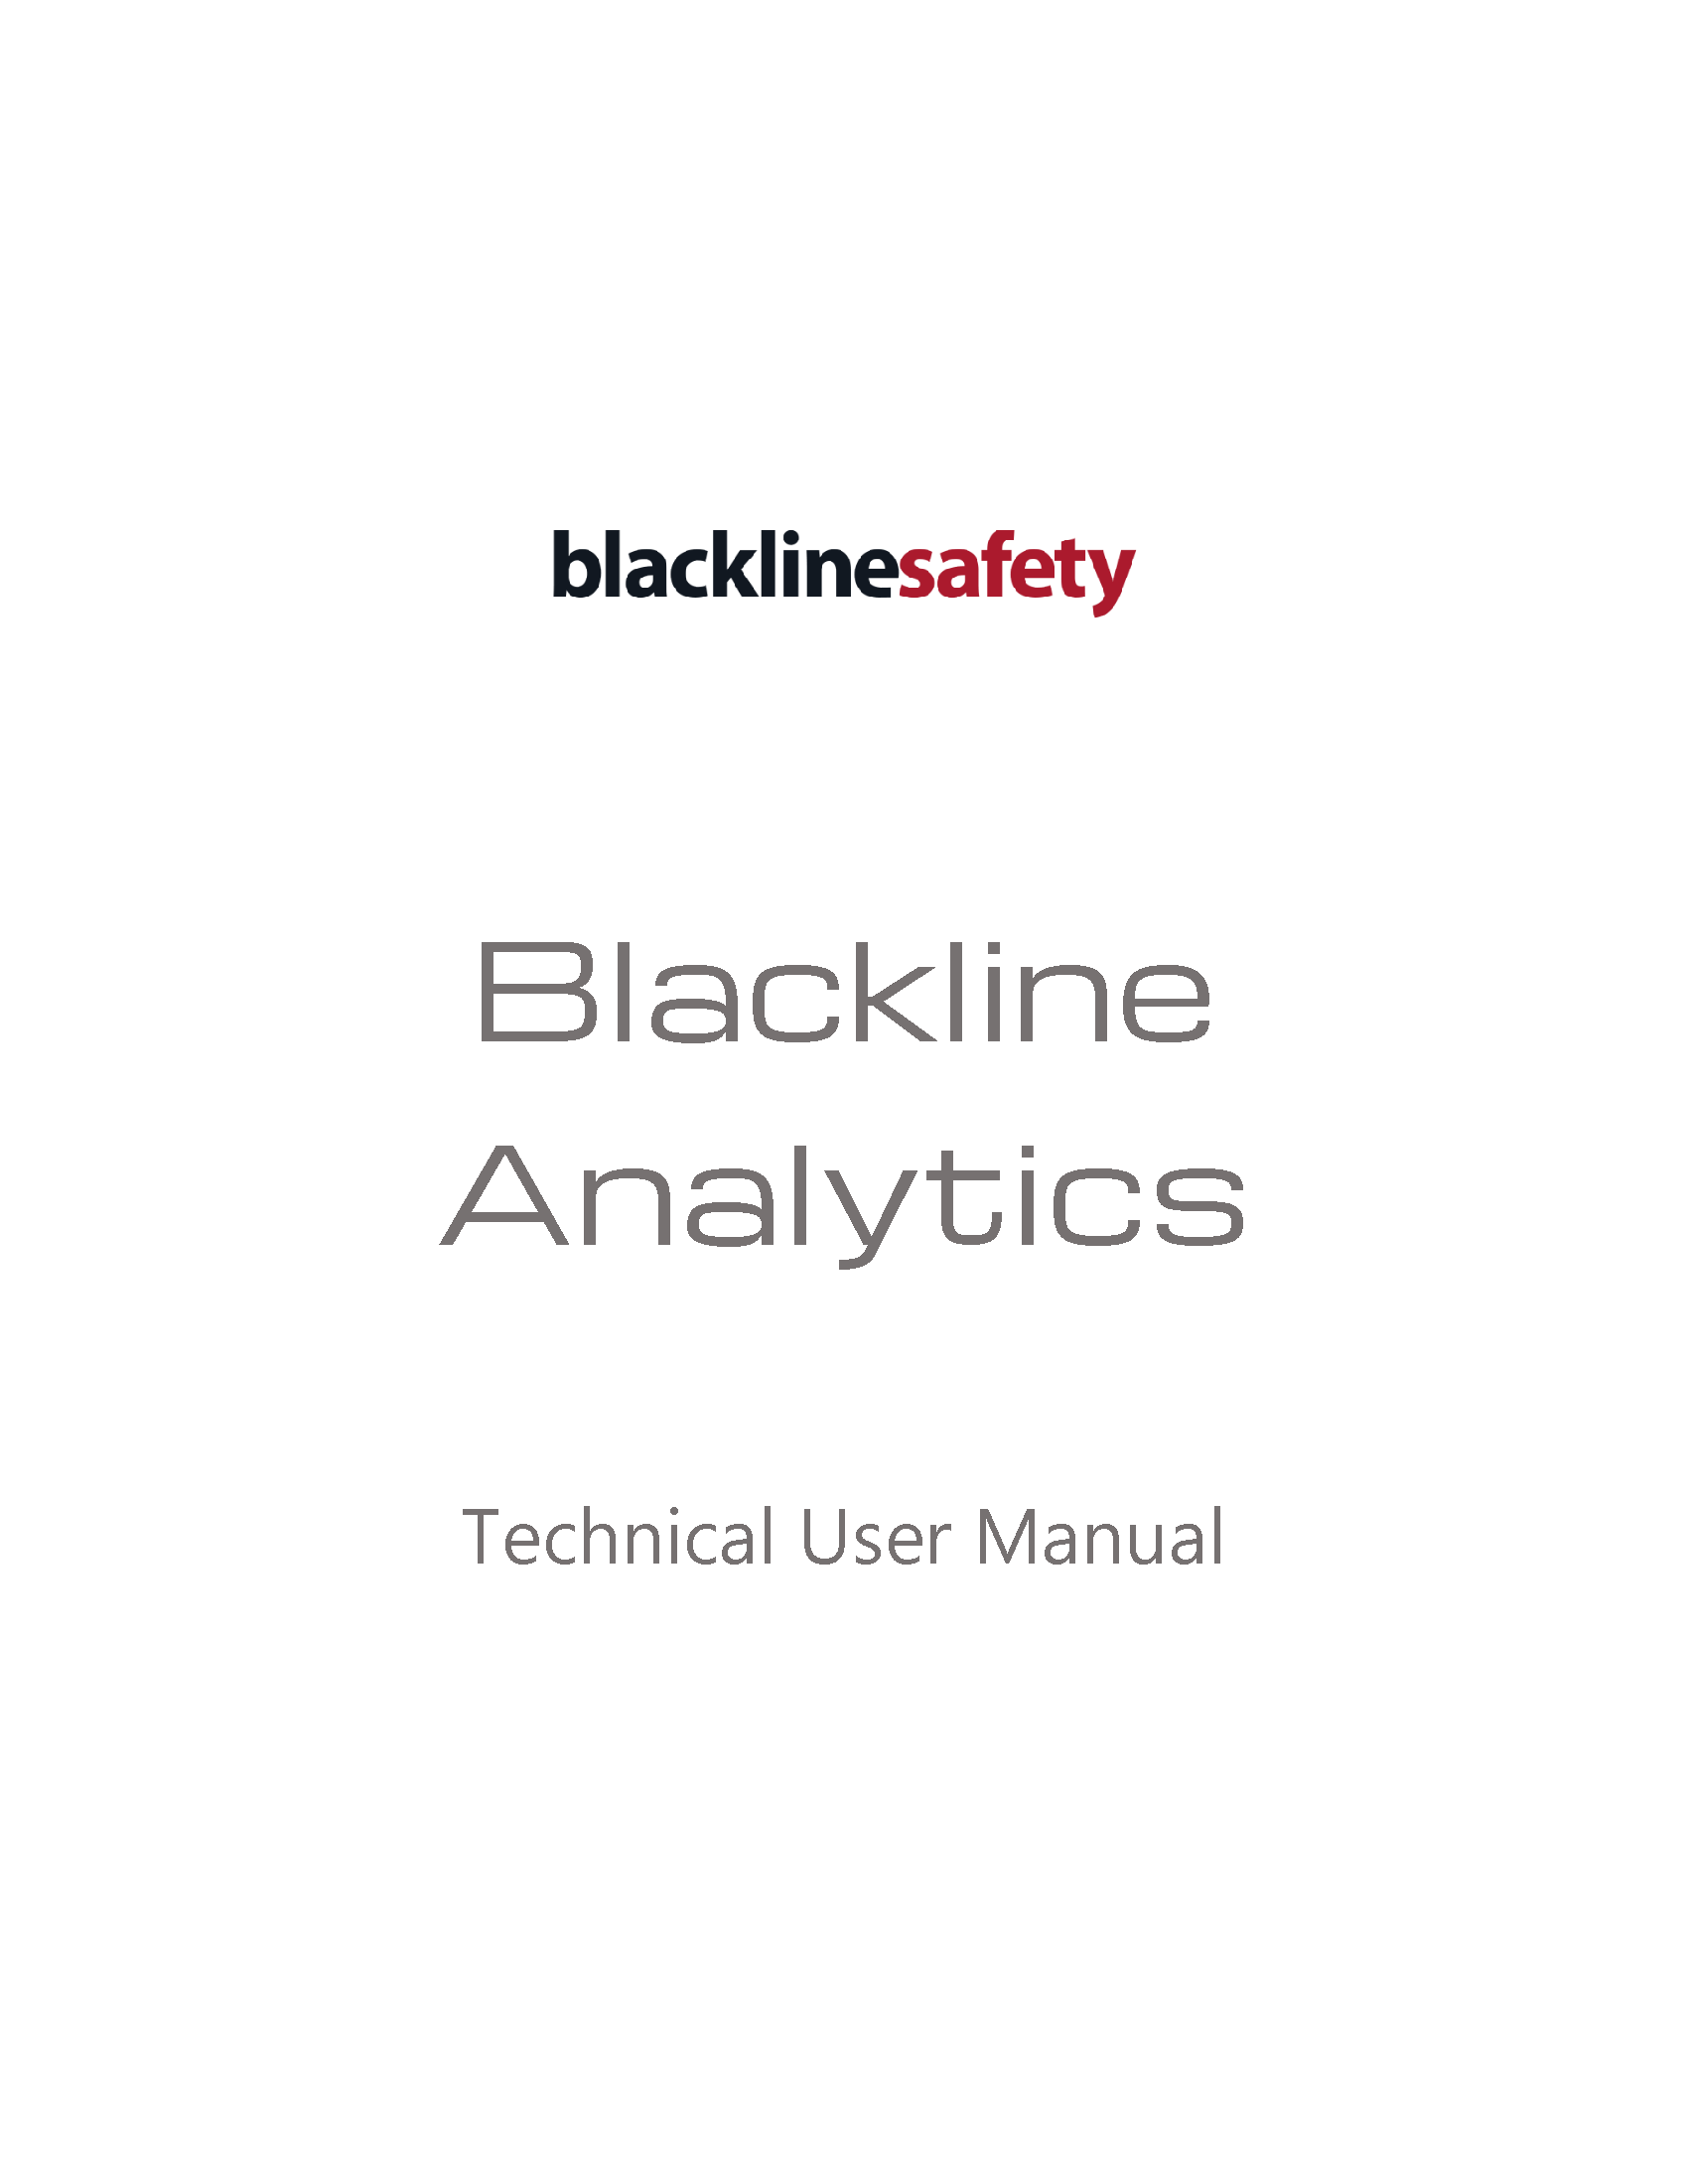 Copertina del manuale tecnico d'uso di Blackline Analytics